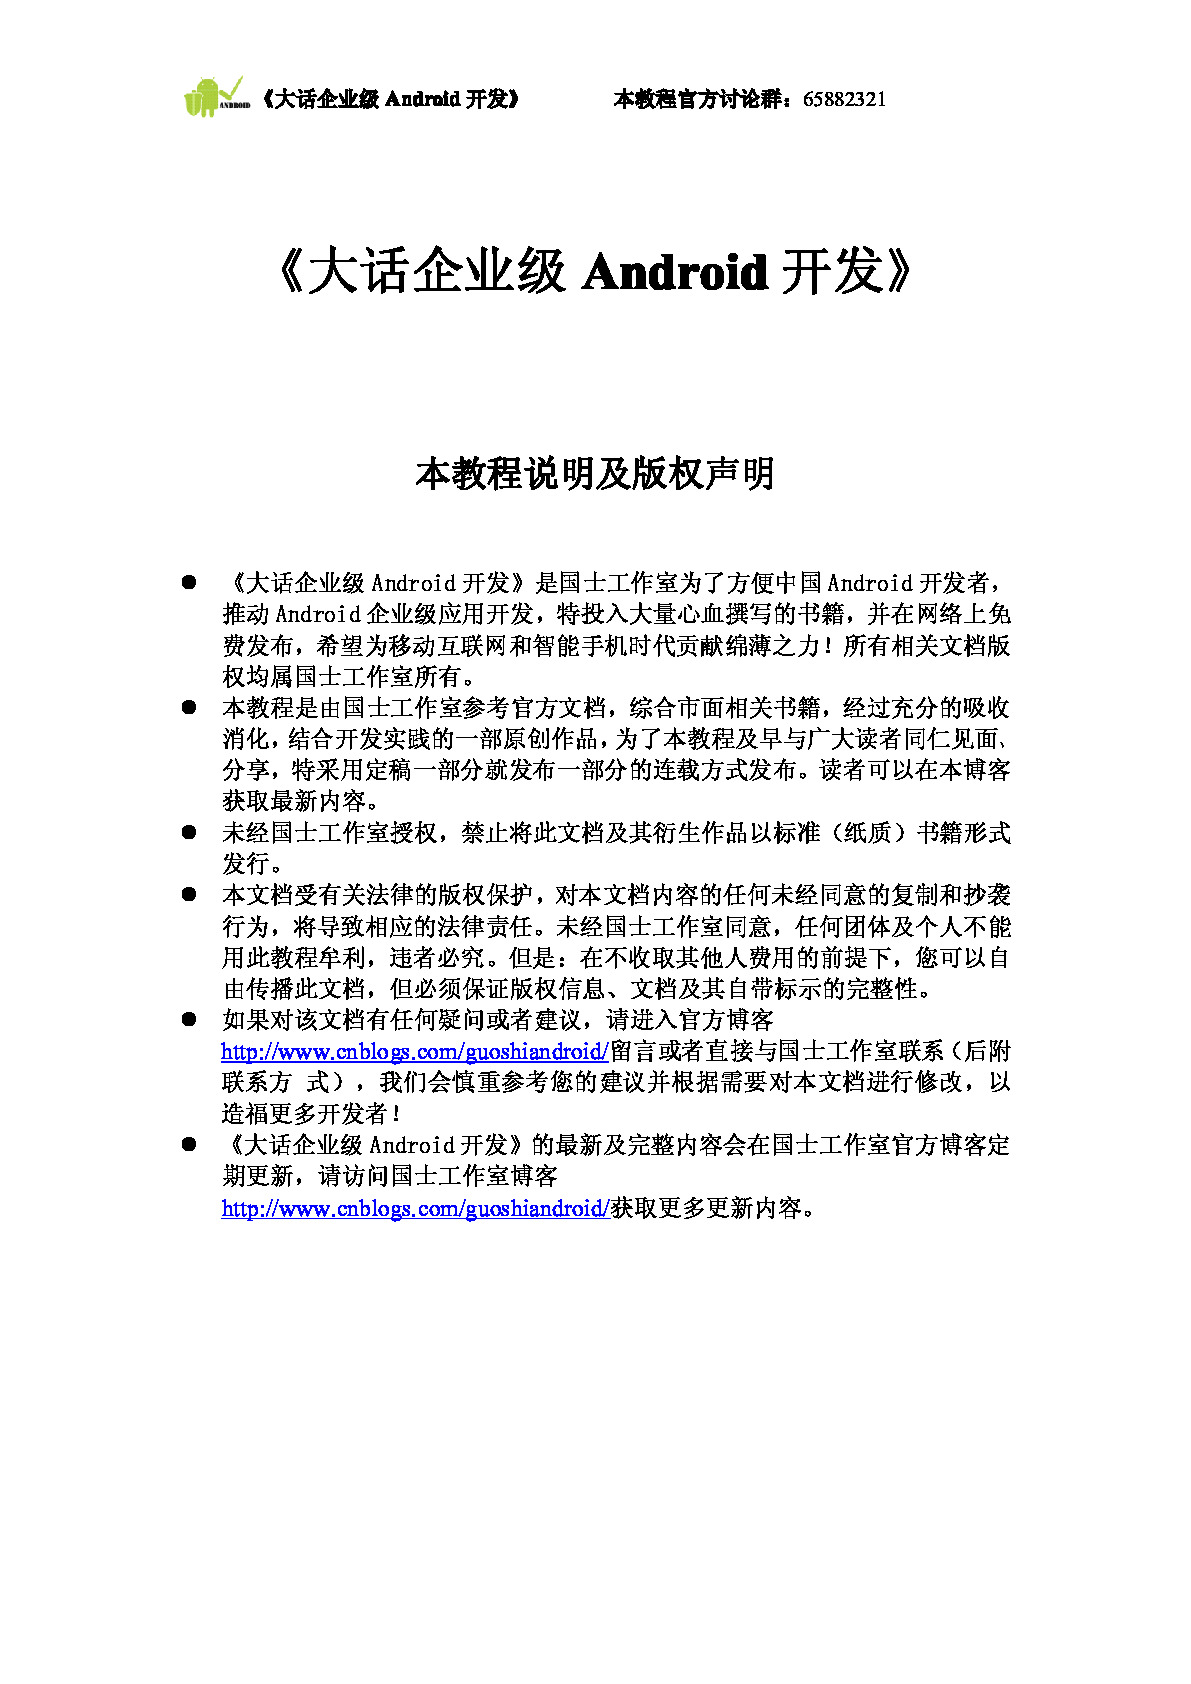 企业级android开发全集(带二级书签,共415页)